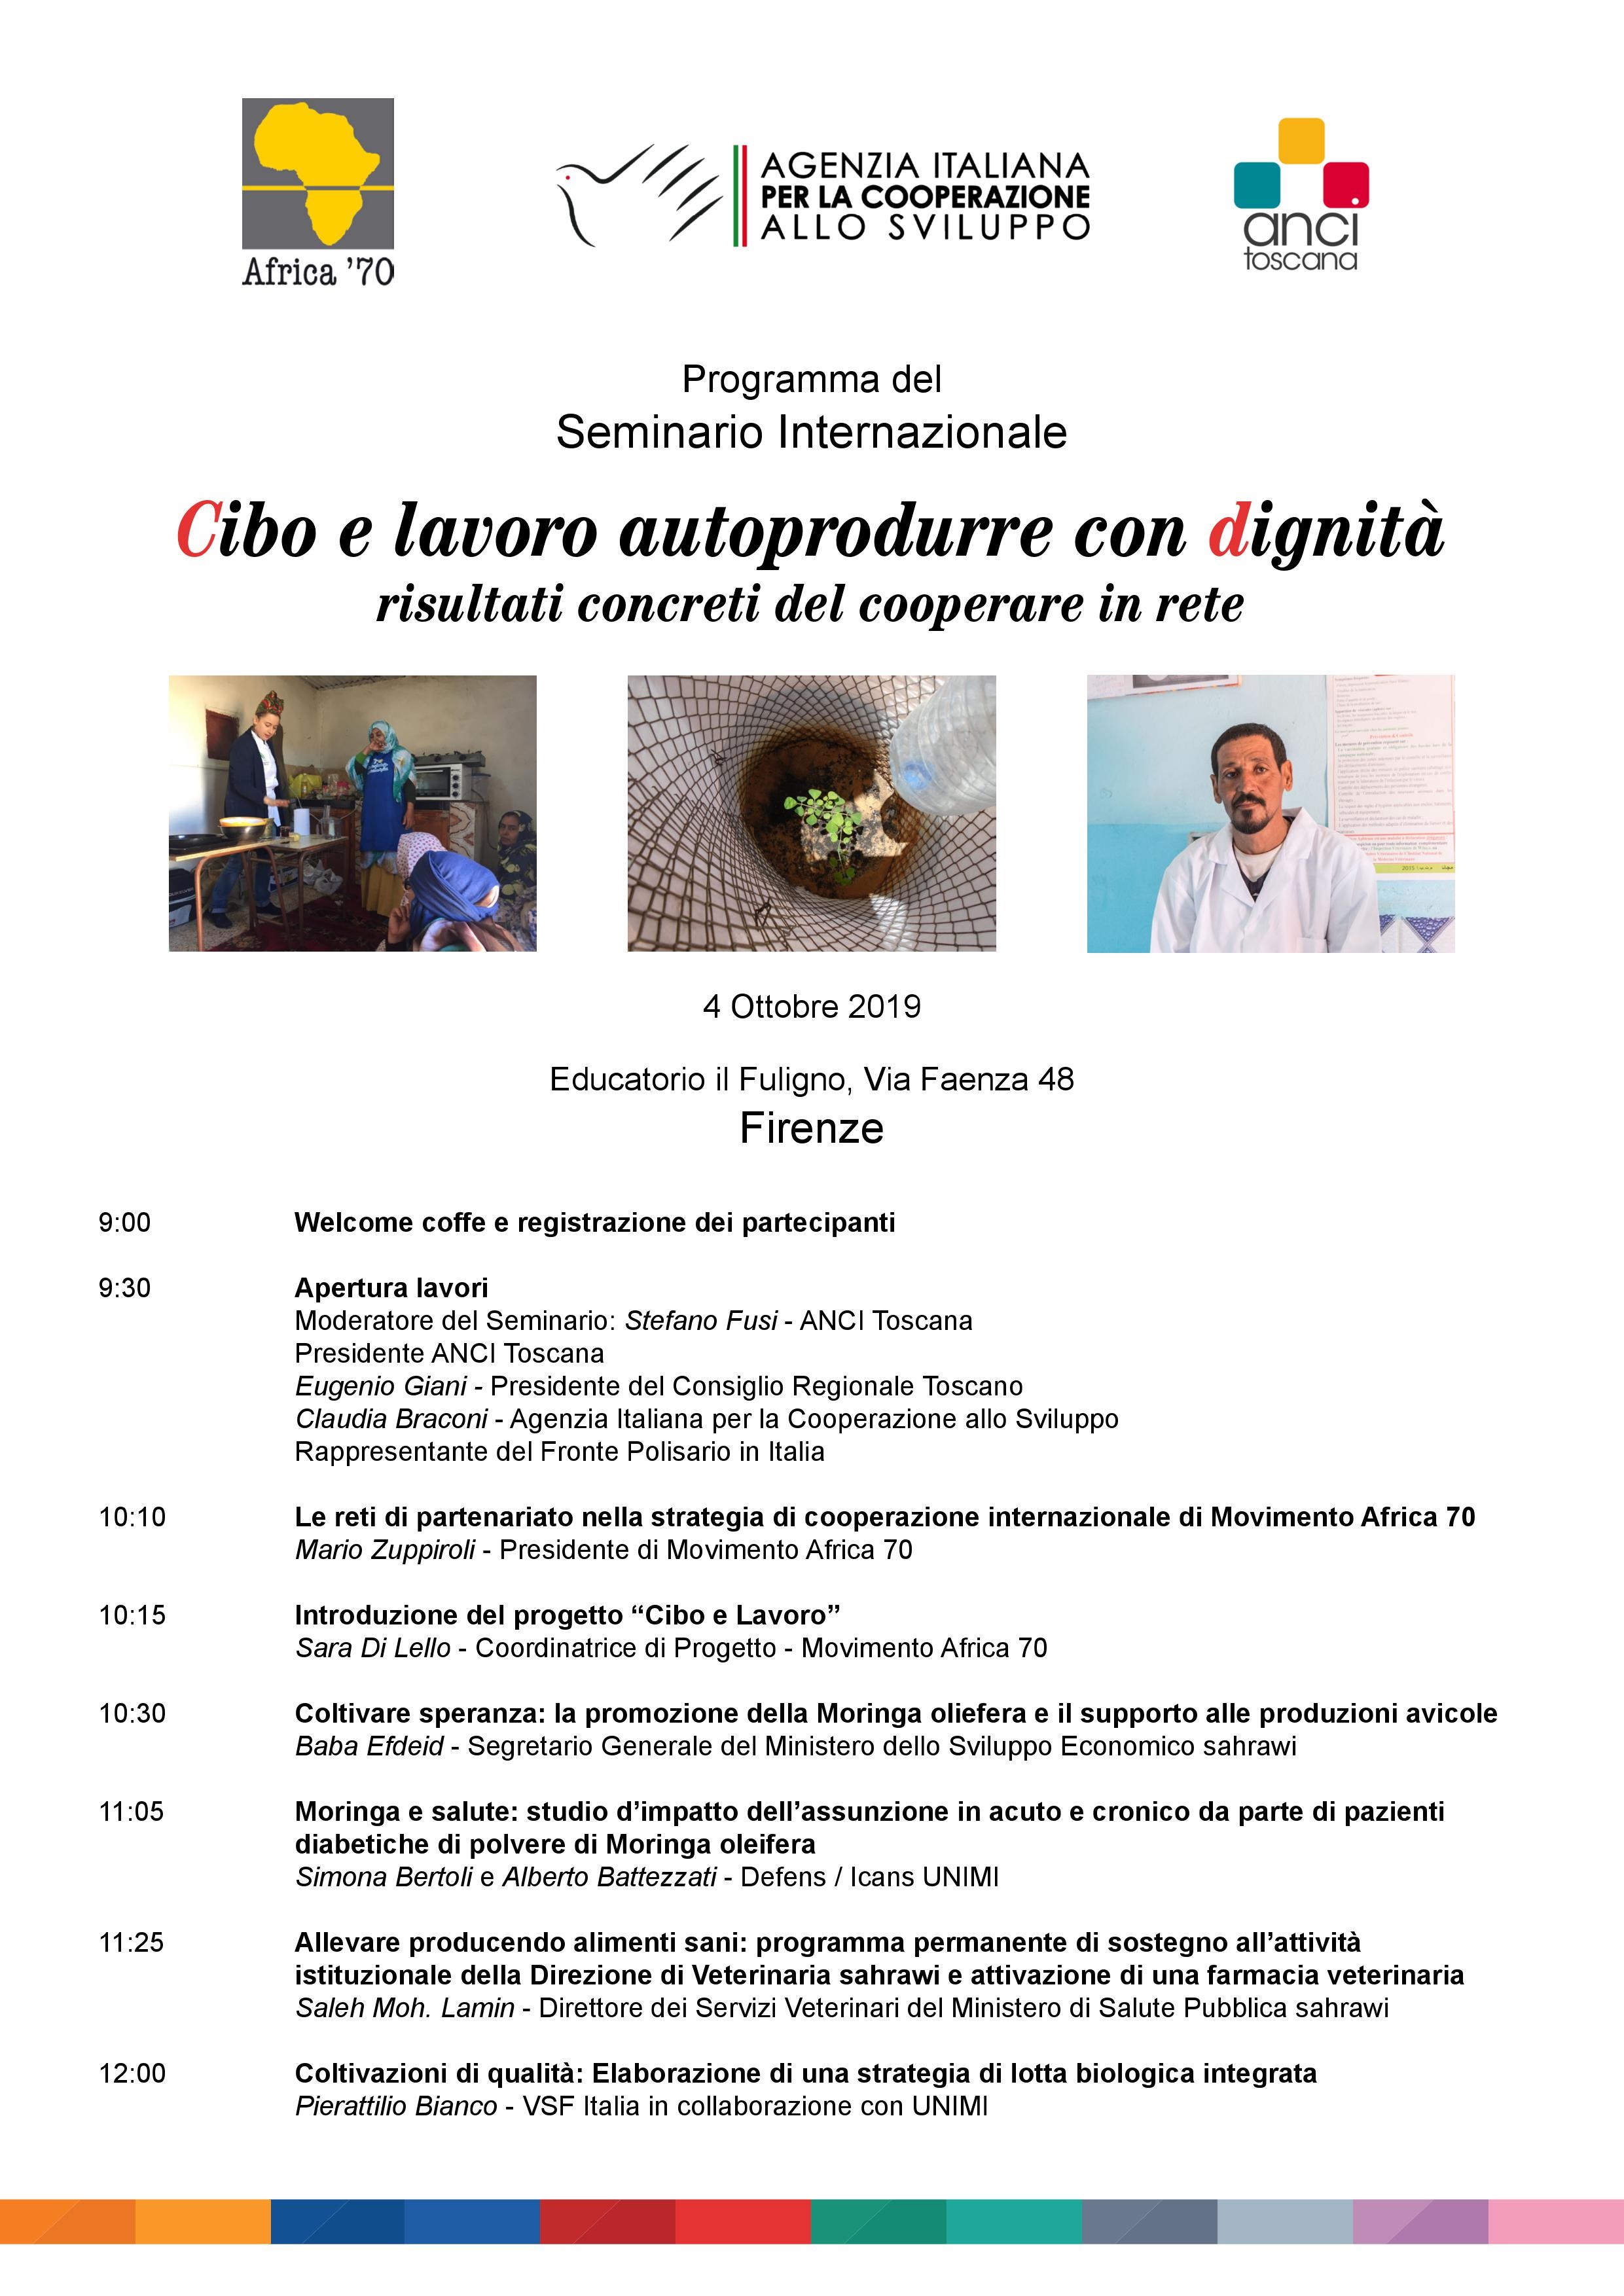 Seminario internazione “Cibo e lavoro autoprodurre con dignità”, 4 ottobre Firenze